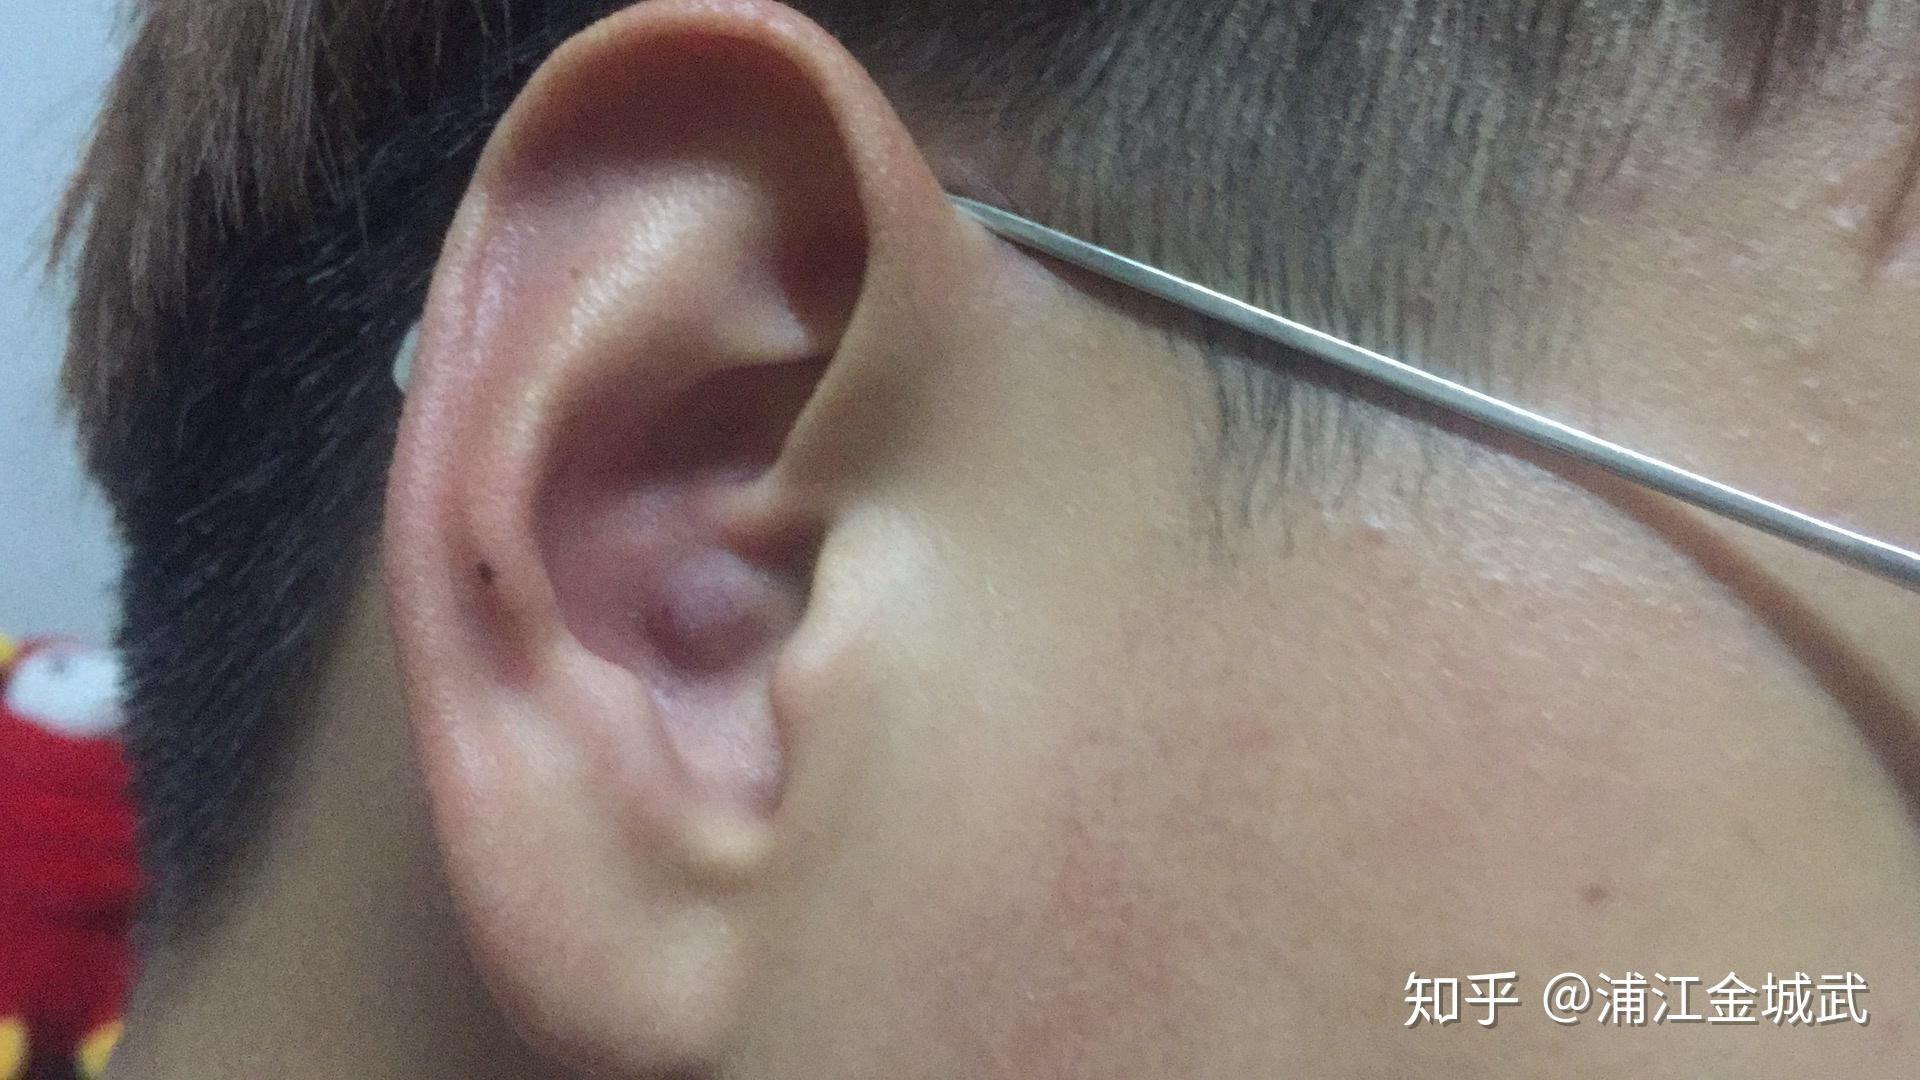 【案例分析】小耳畸形患者时隔一年回院做二期手术，患者重获“新”耳朵 - 哔哩哔哩